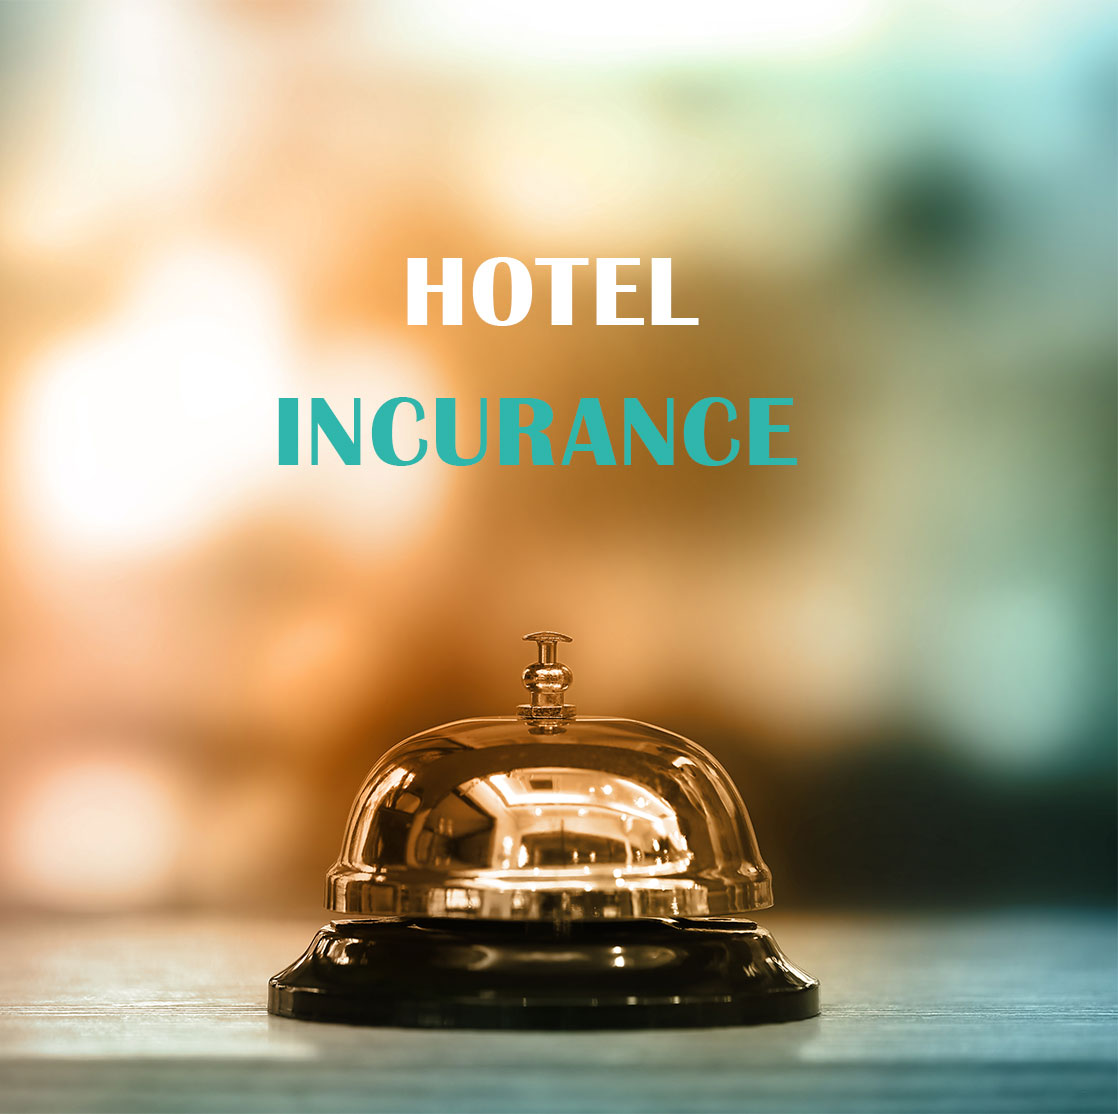 ασφάλειες ξενοδοχείων σαντορίνη, ασφάλειες ξενοδοχείων κυκλάδες